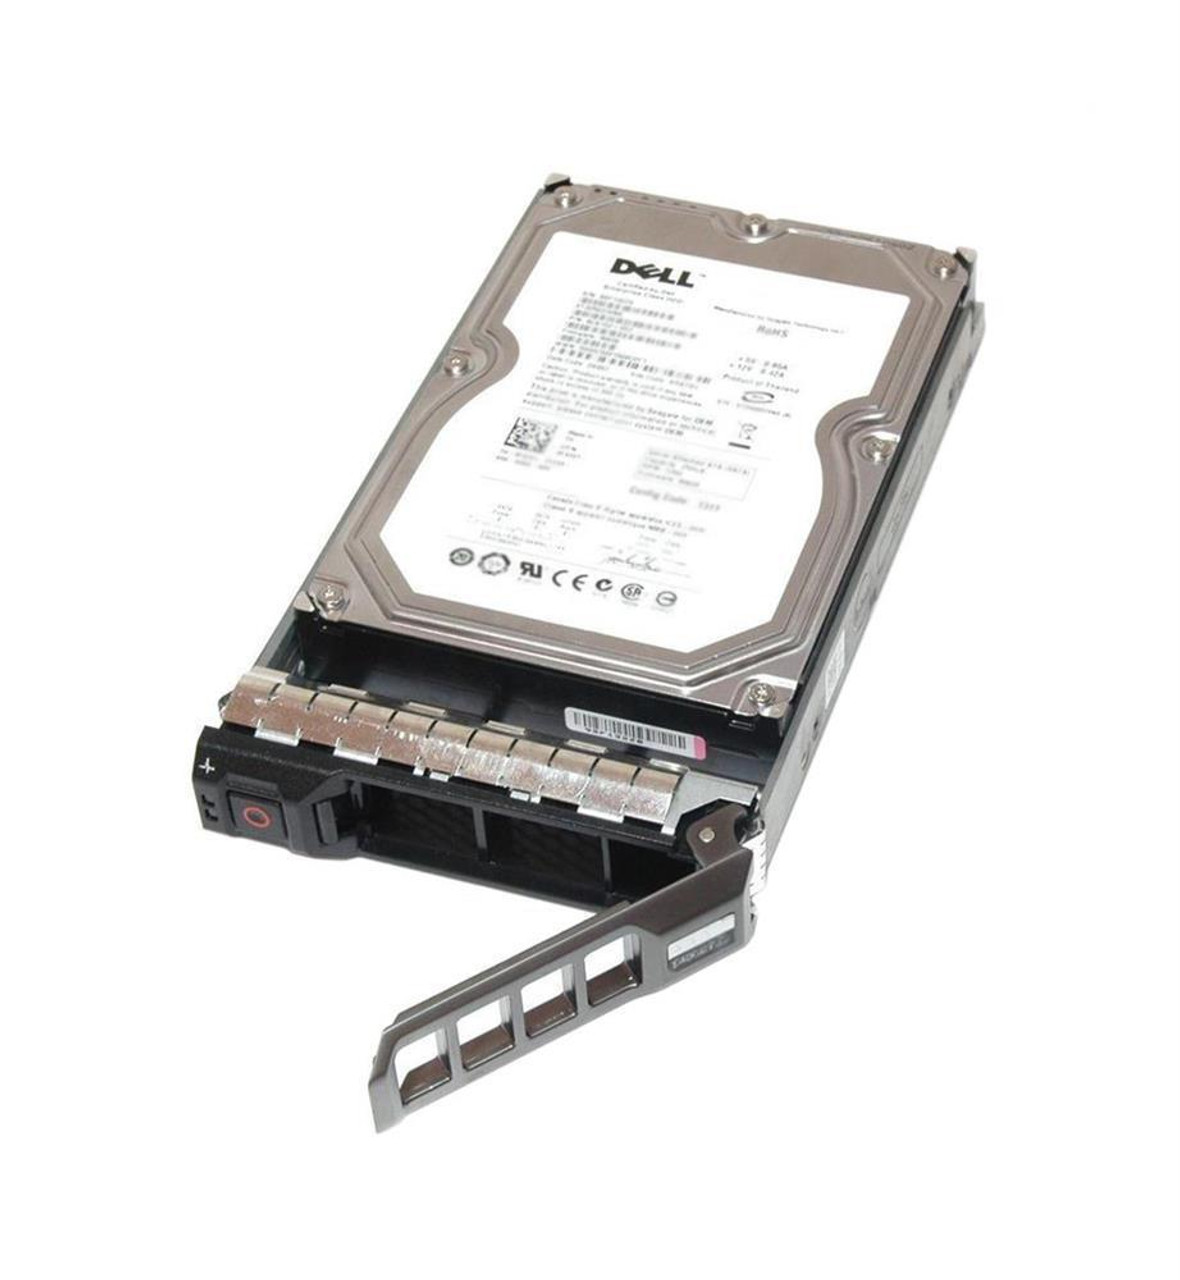 Dell 3.2GB 5400RPM ATA/IDE 3.5-inch Internal Hard Drive